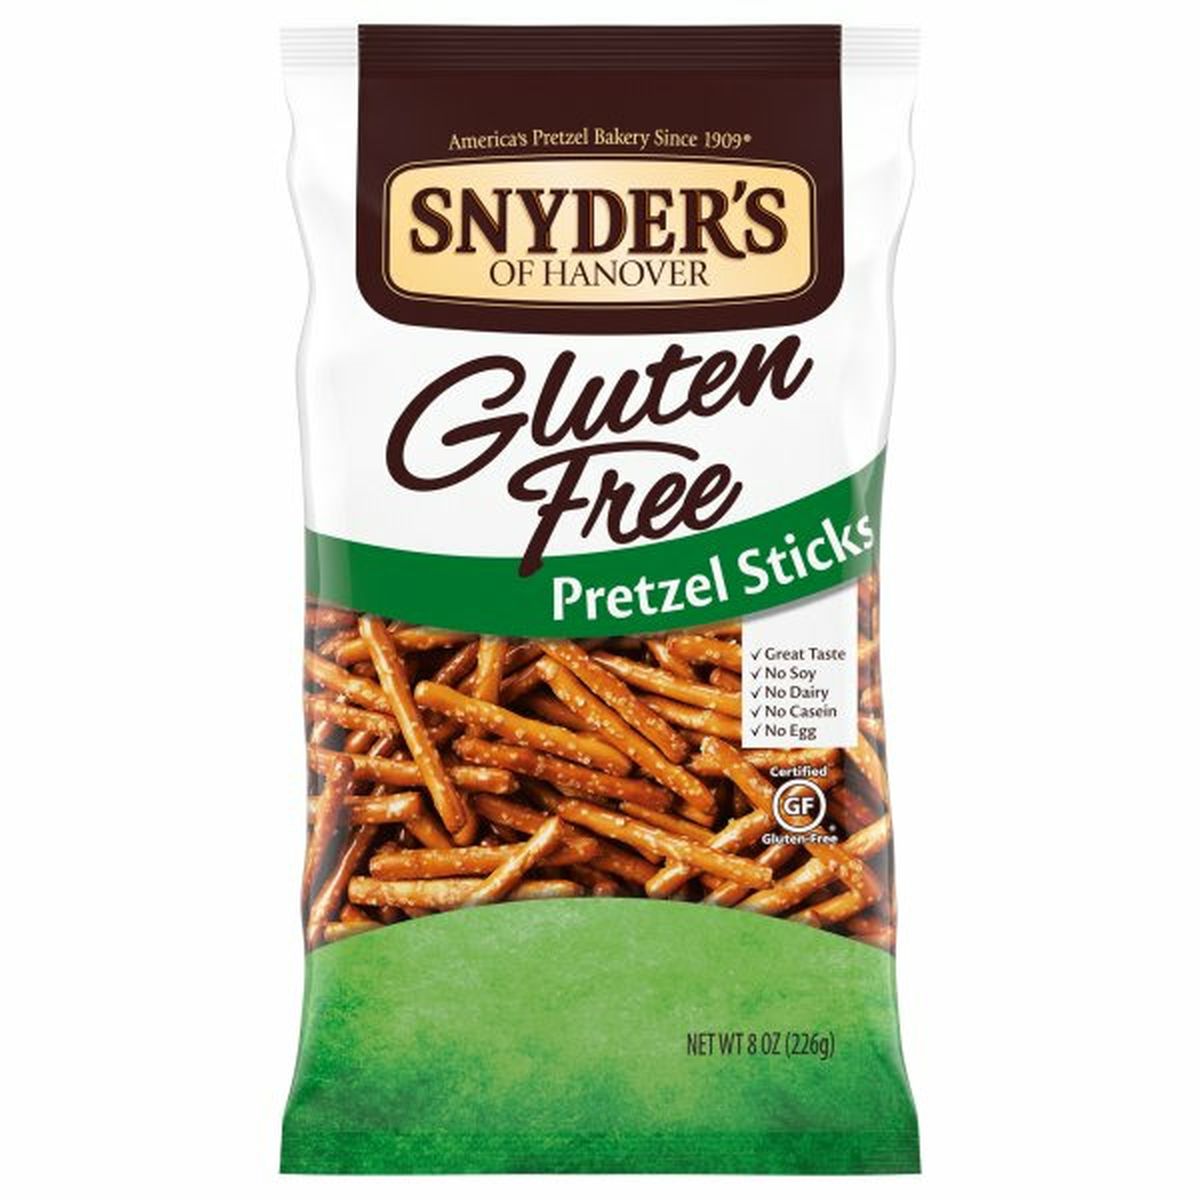 Calories in Snyder's of Hanovers Pretzel Sticks, Gluten Free